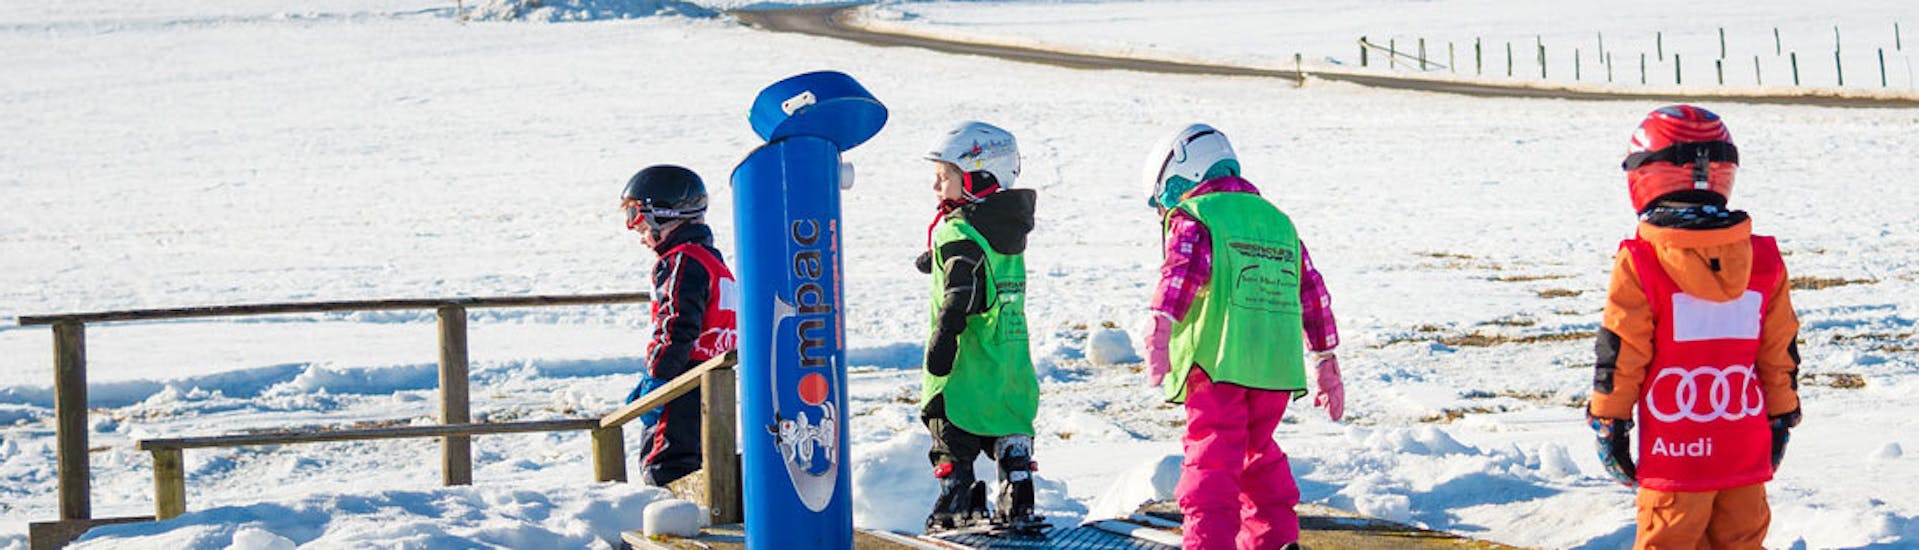 Clases de esquí para niños a partir de 4 años para principiantes con Ski School Snow & Bike Factory Willingen.